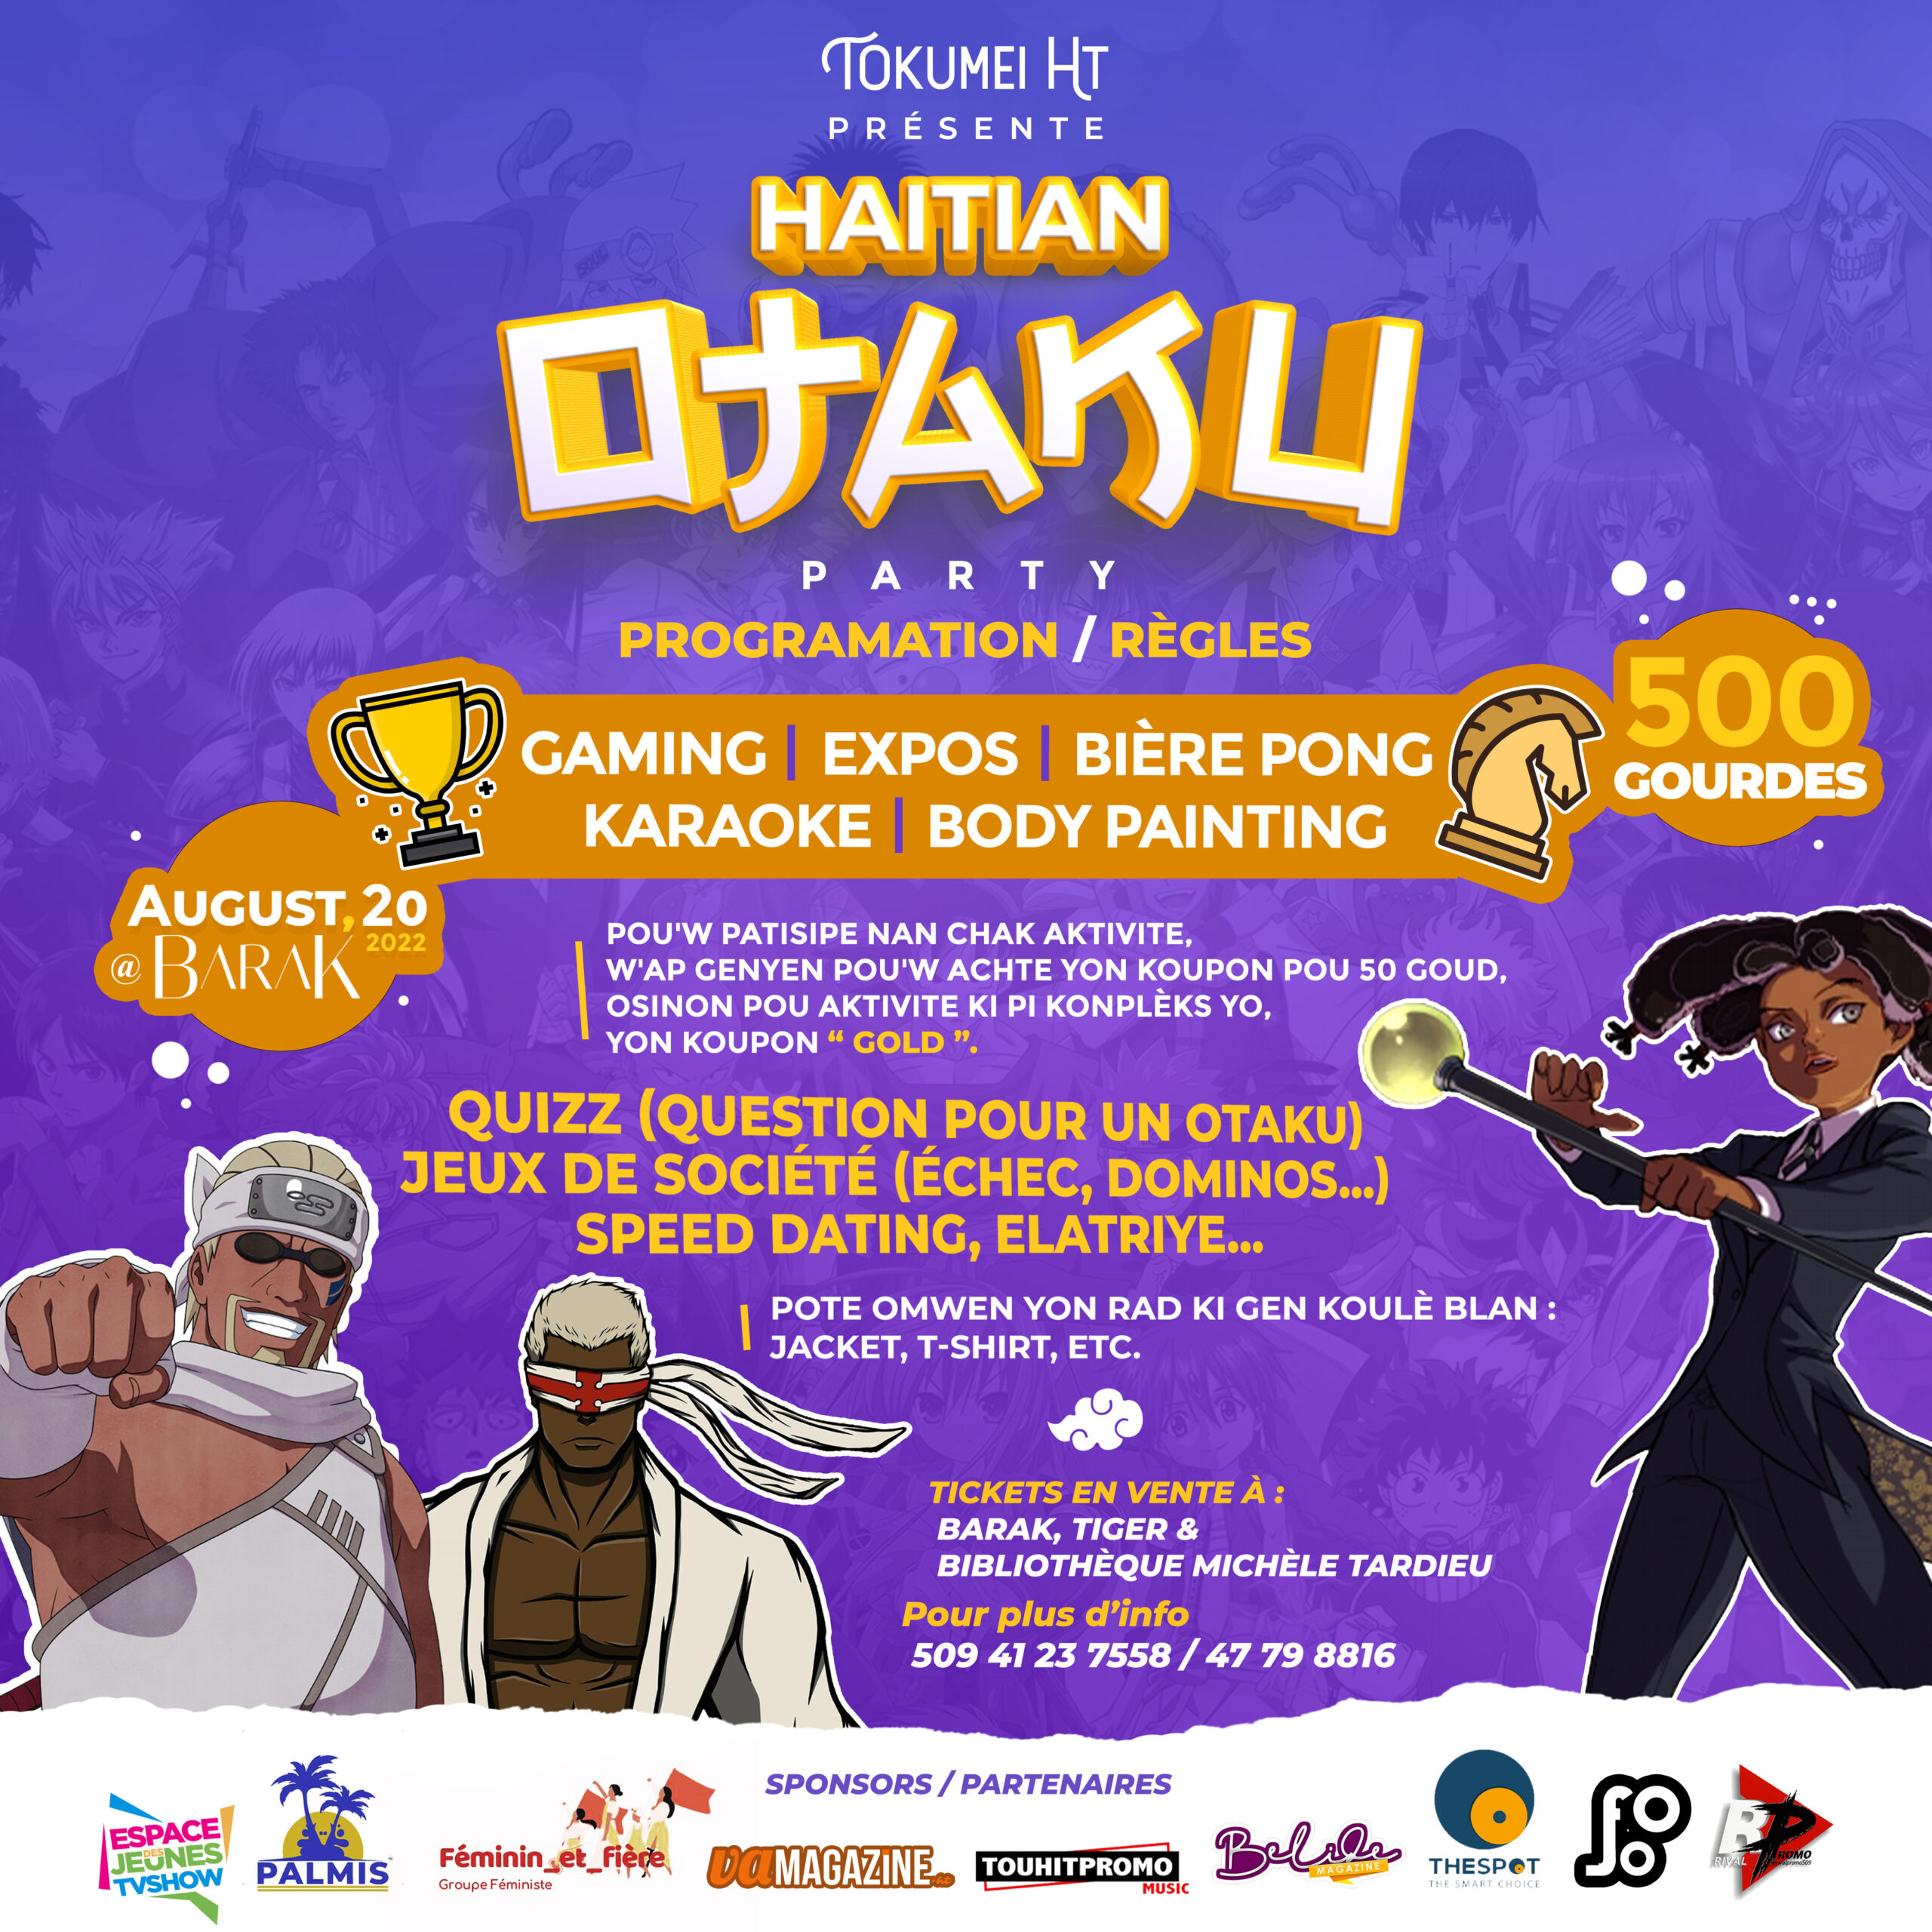 HAITIAN OTAKU Party 